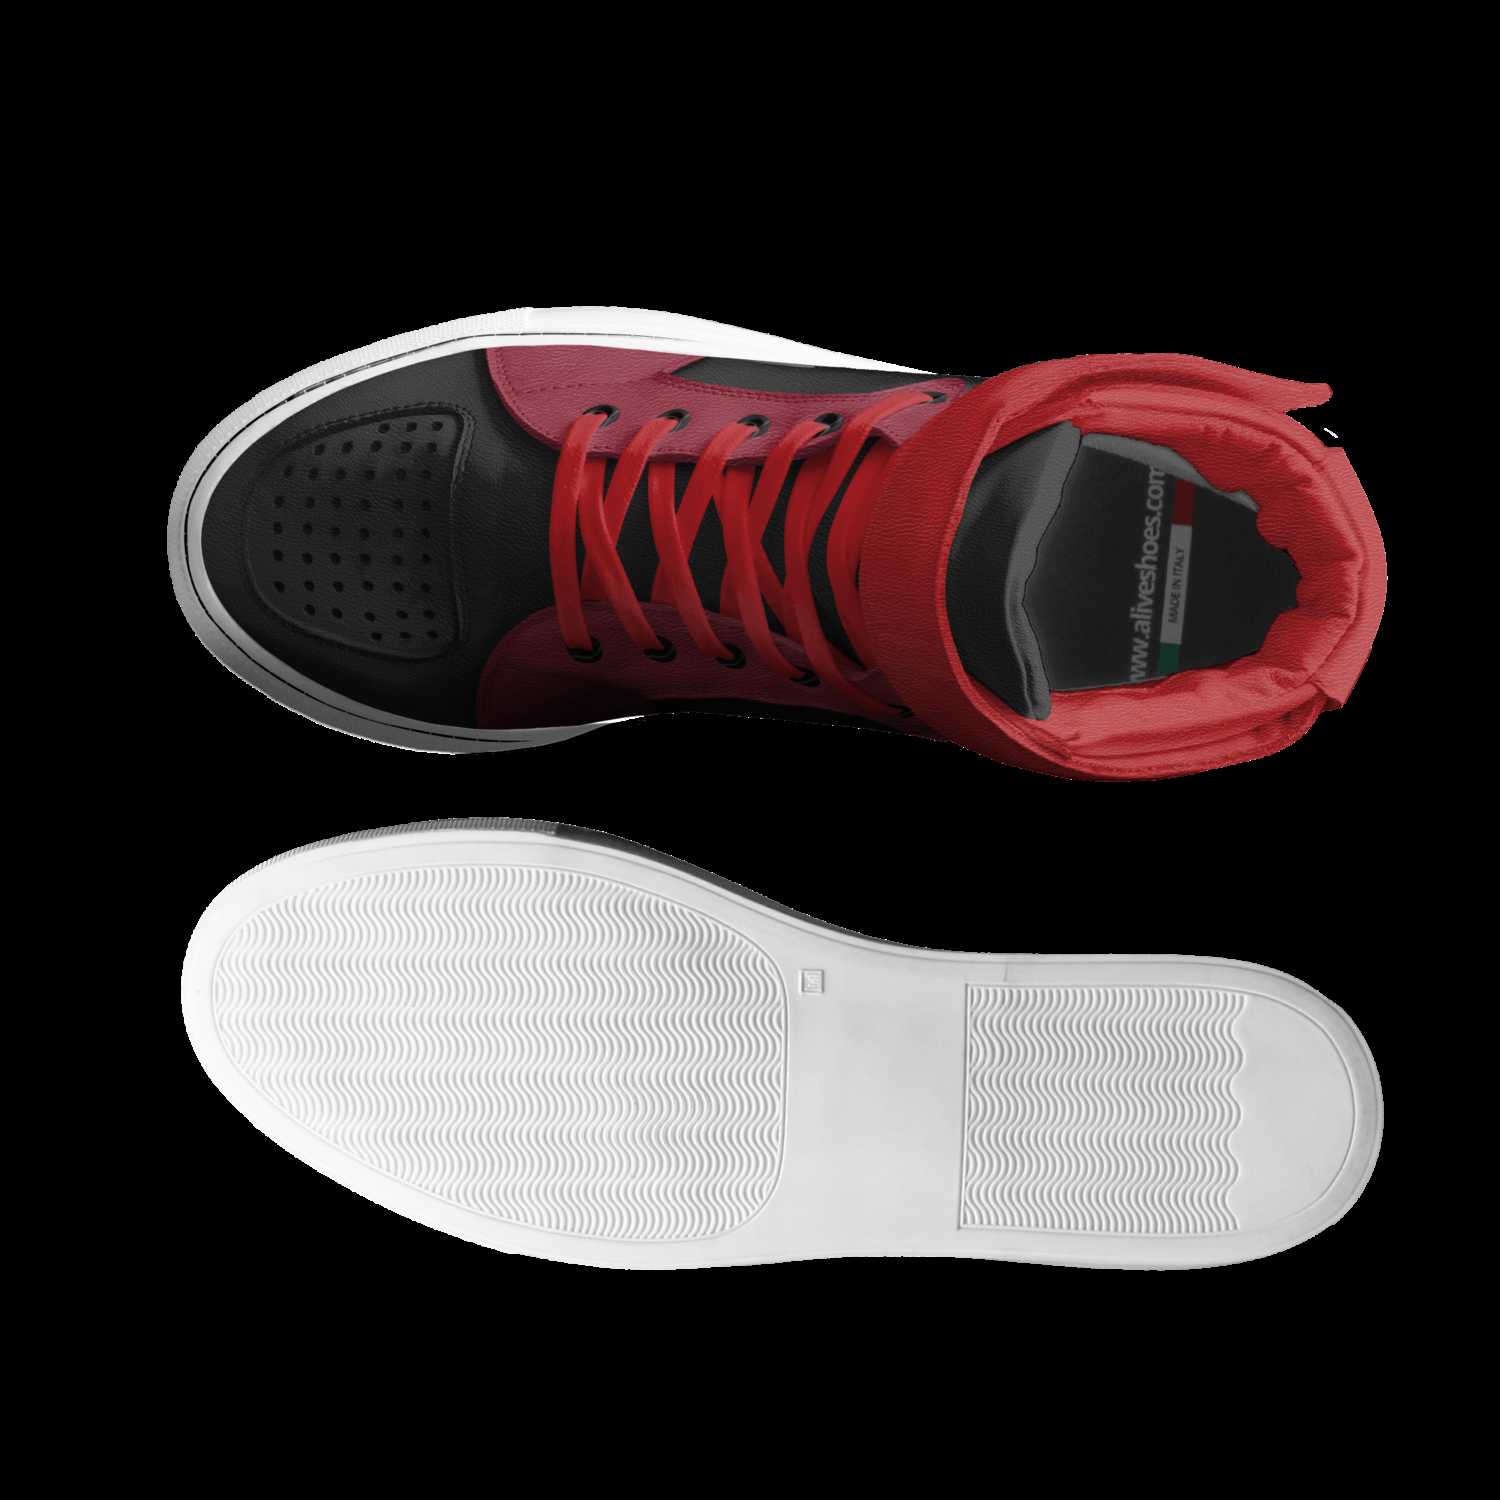 Blackbird | A Custom Shoe concept by Casper